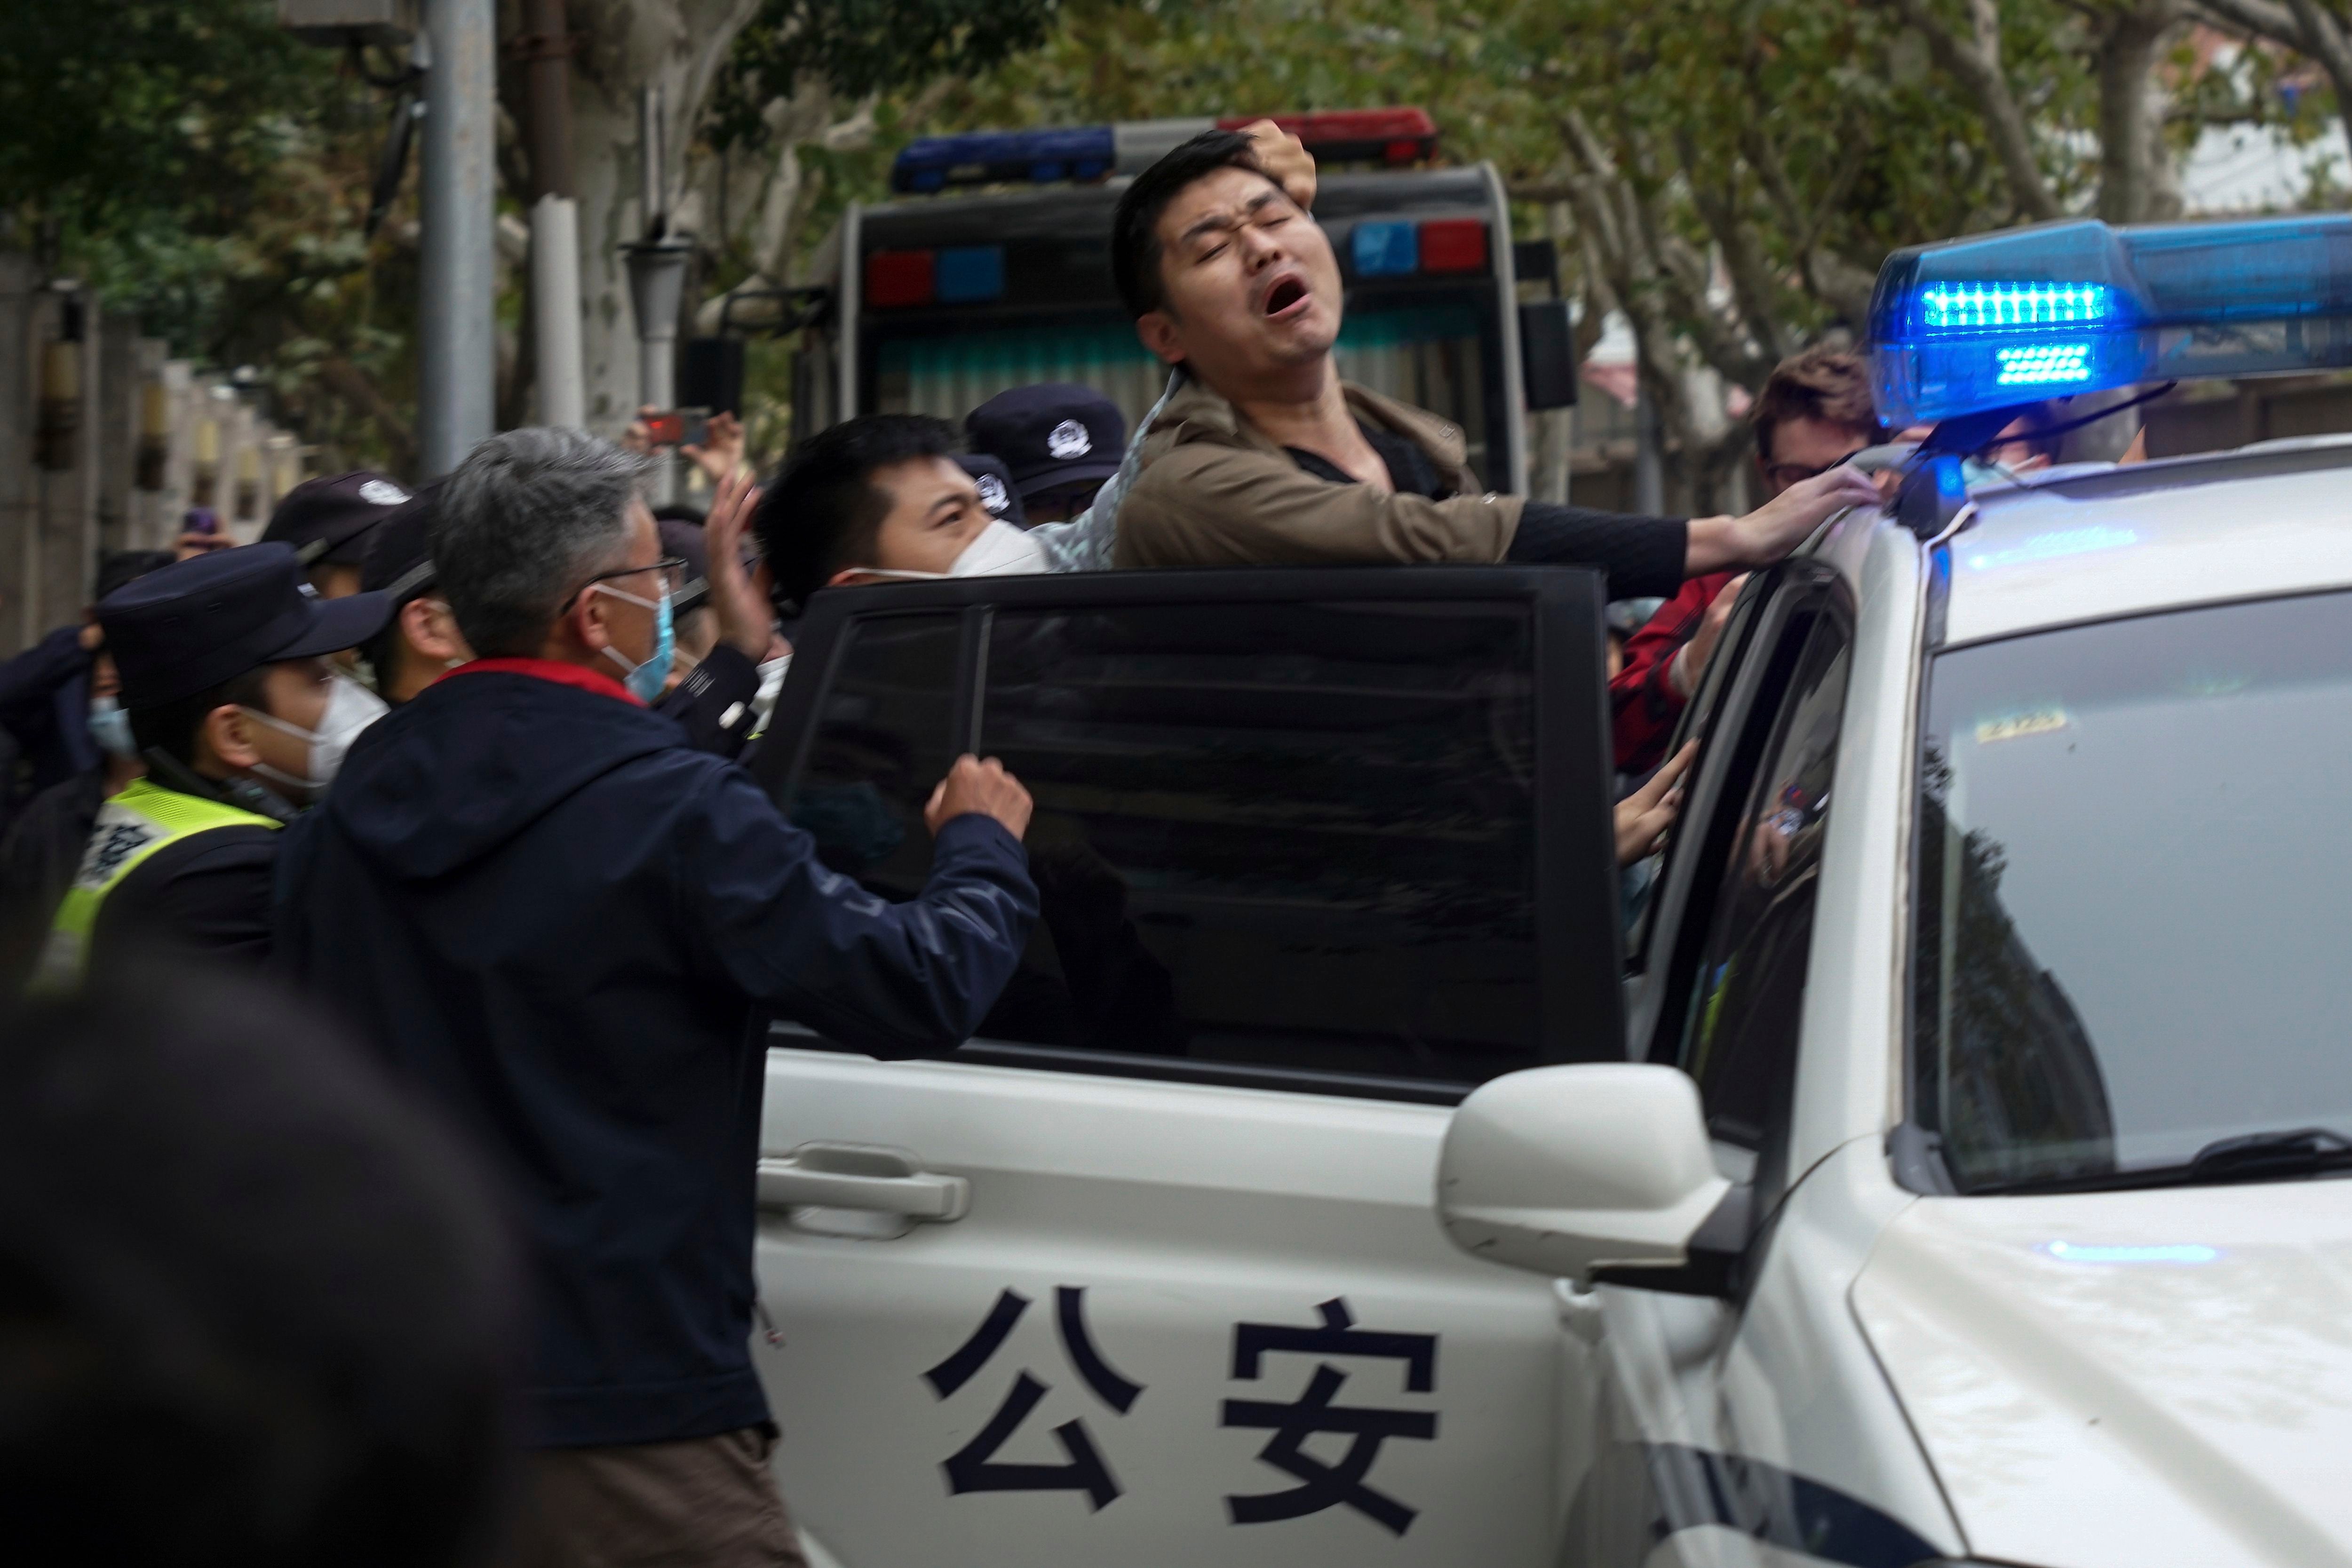 En los últimos años, el régimen de Xi Jinping ha detenido y encarcelado a decenas de ciudadanos chinos y extranjeros sospechosos de espionaje. (FOTO: AP)